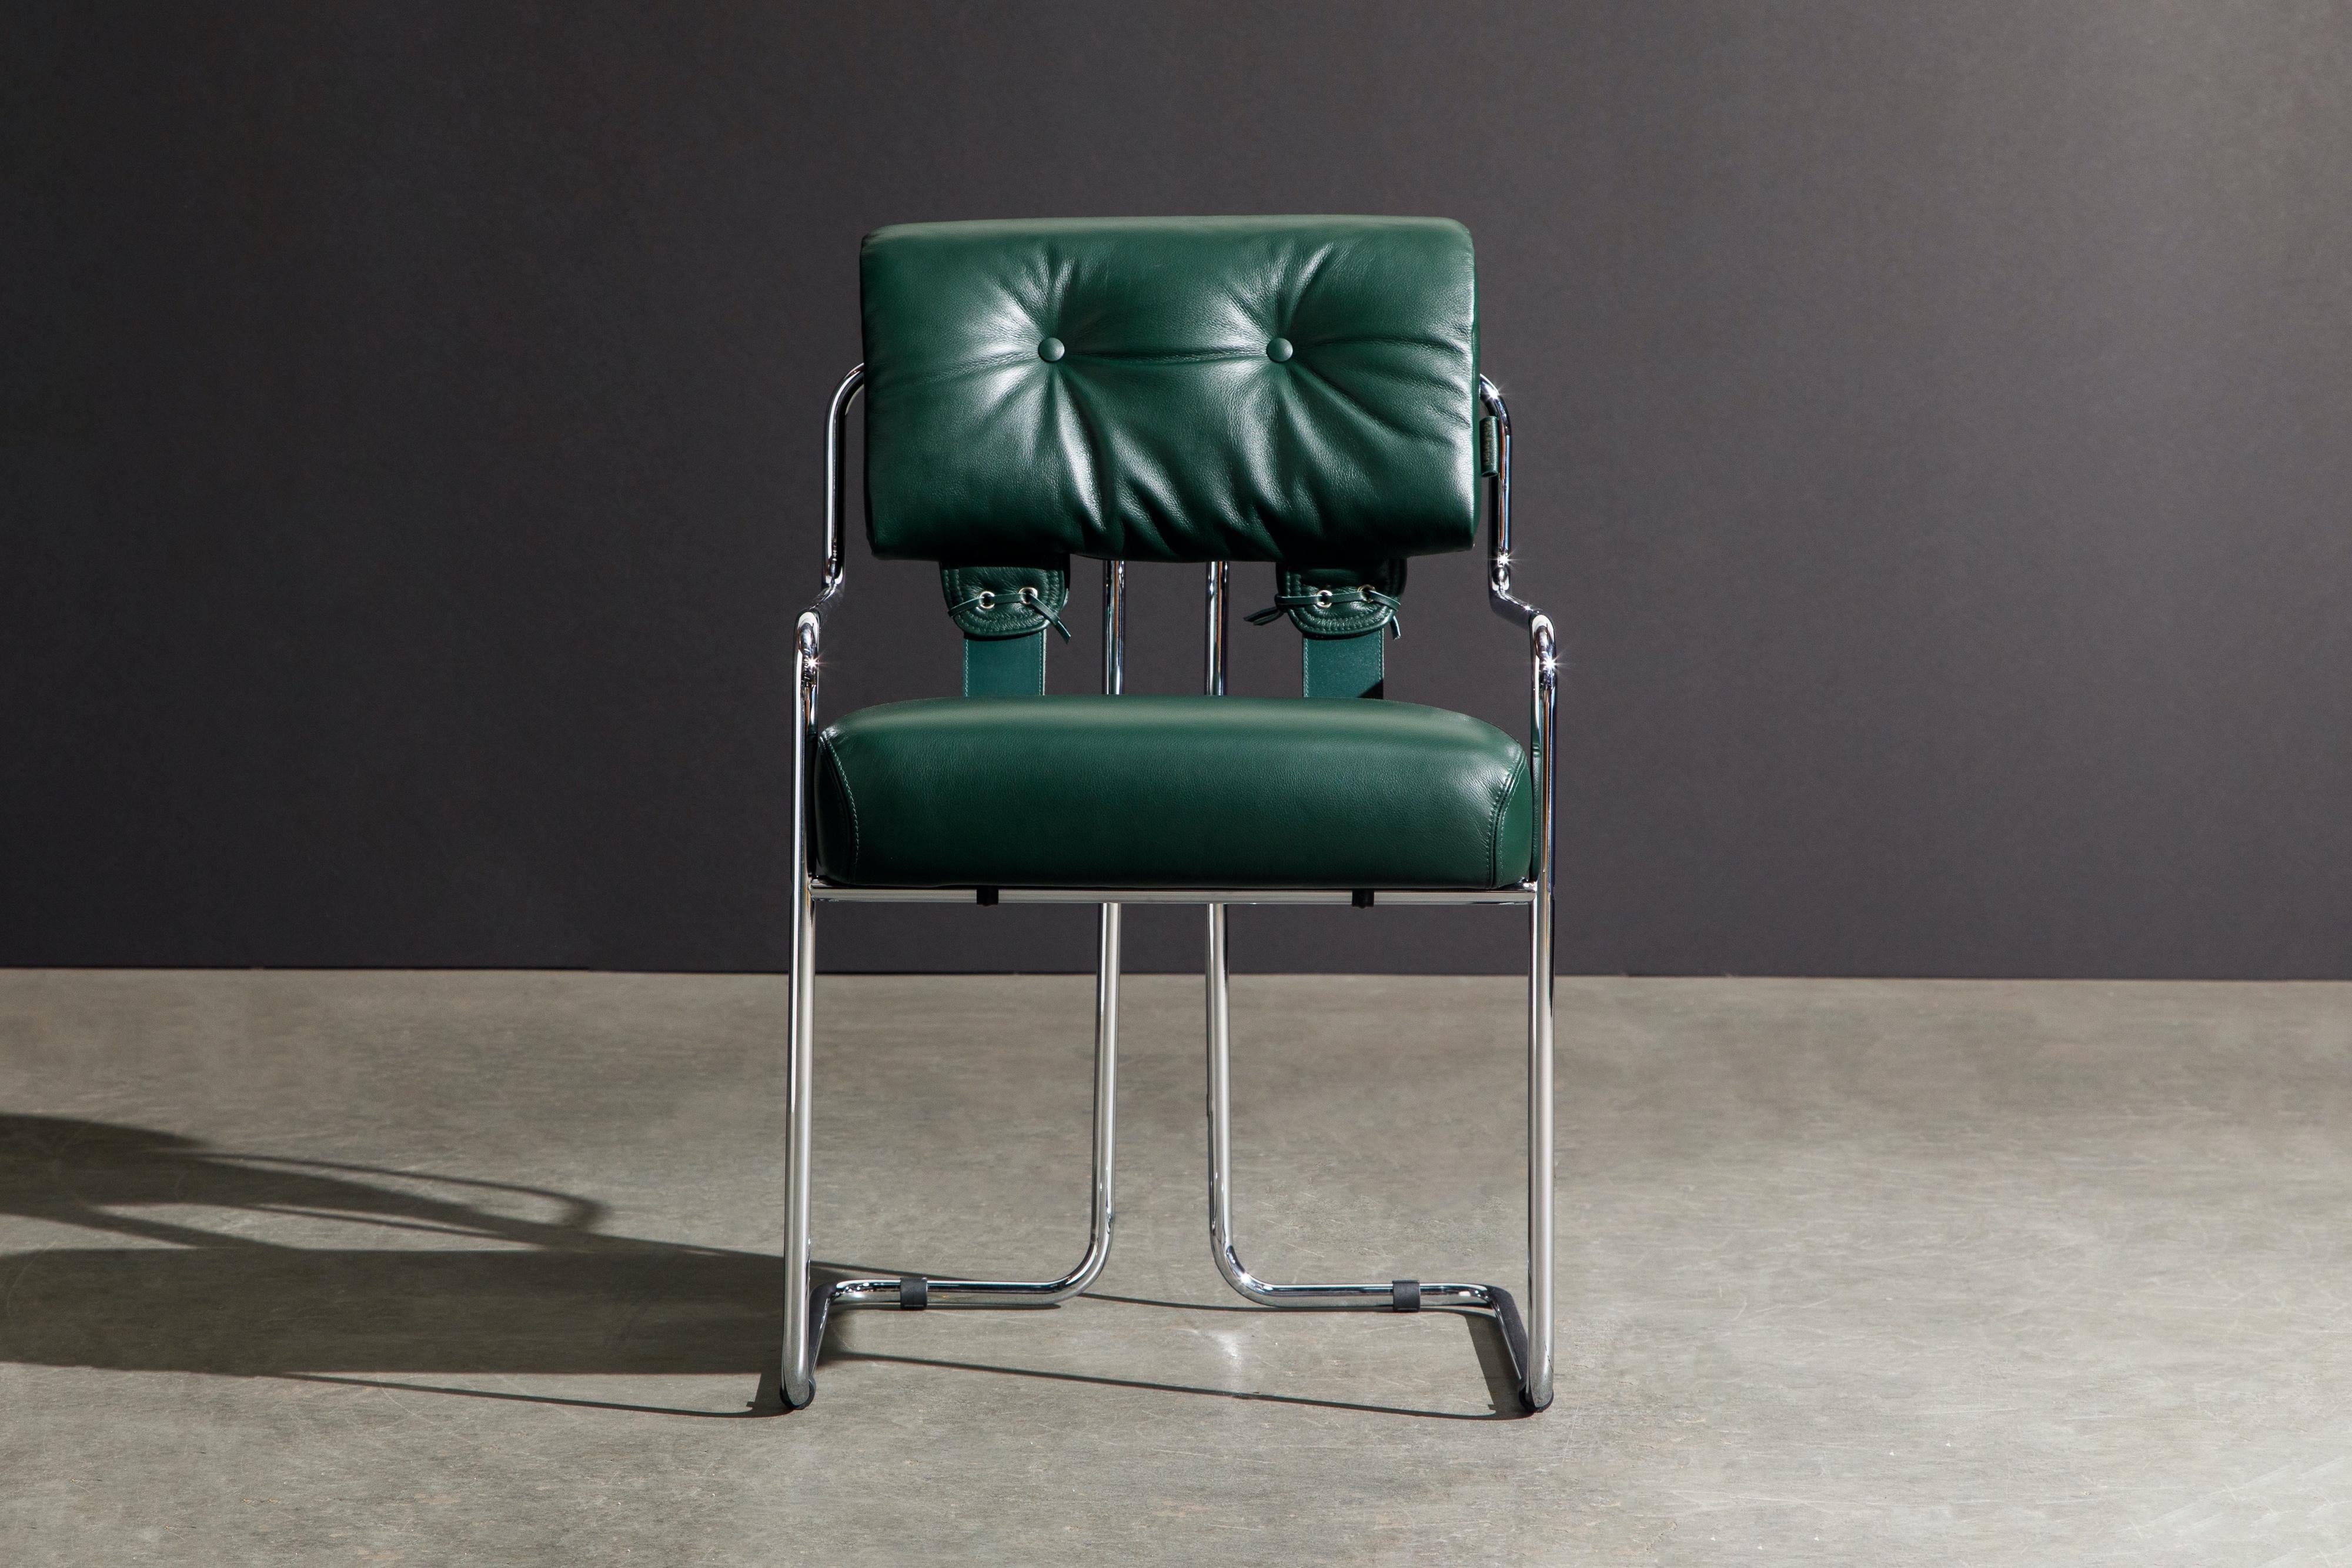 Ensemble de huit (8) fauteuils Tucroma (Brand New) en beau cuir vert émeraude avec des cadres en chrome poli. Les sièges et les dossiers sont recouverts de cuir vert souple et sont fixés à de gracieuses armatures tubulaires en acier poli. Ils sont